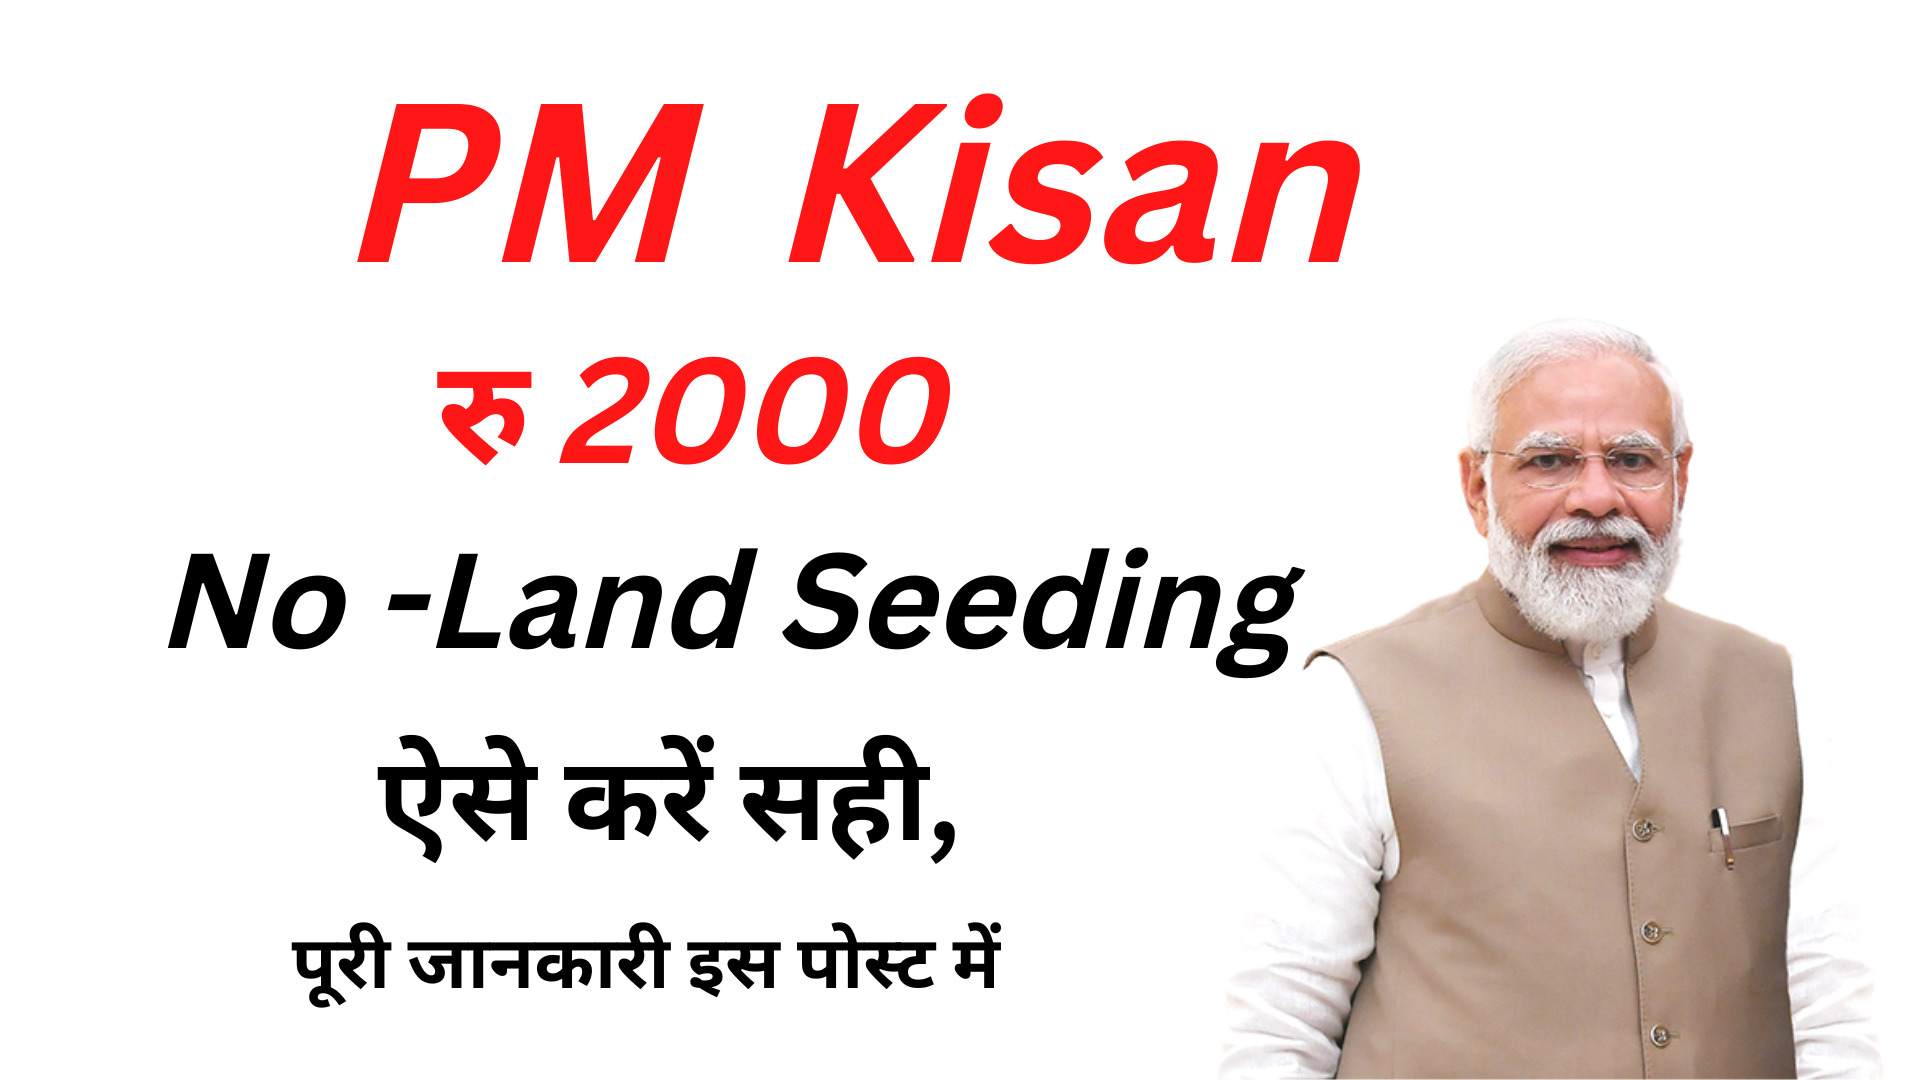 PM Kisan Land Seeding Problem